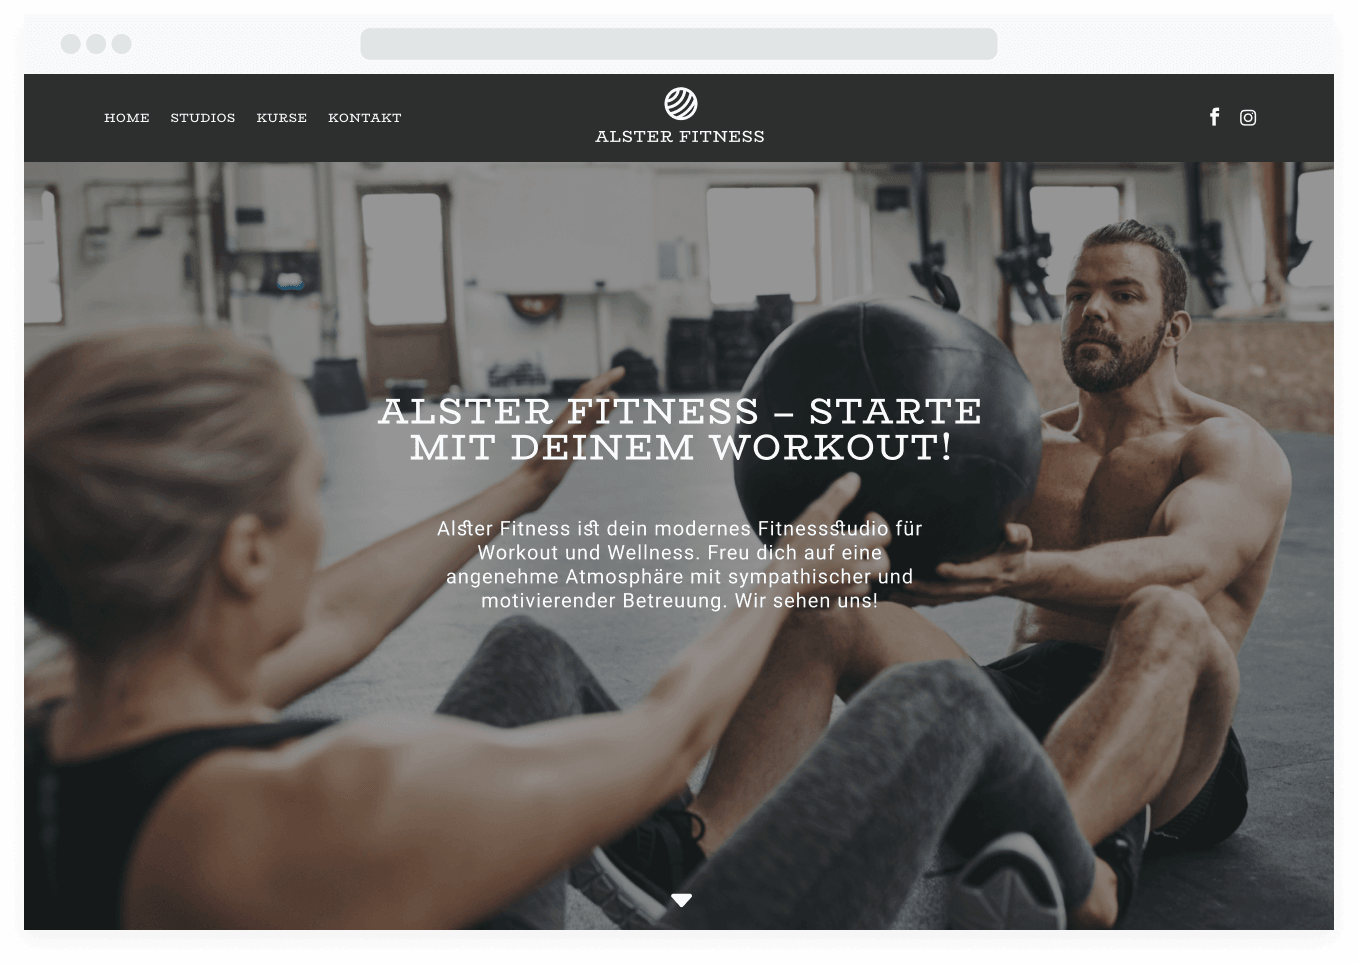 Beispiel für eine Fitness-Website mit Online-Buchungstool.